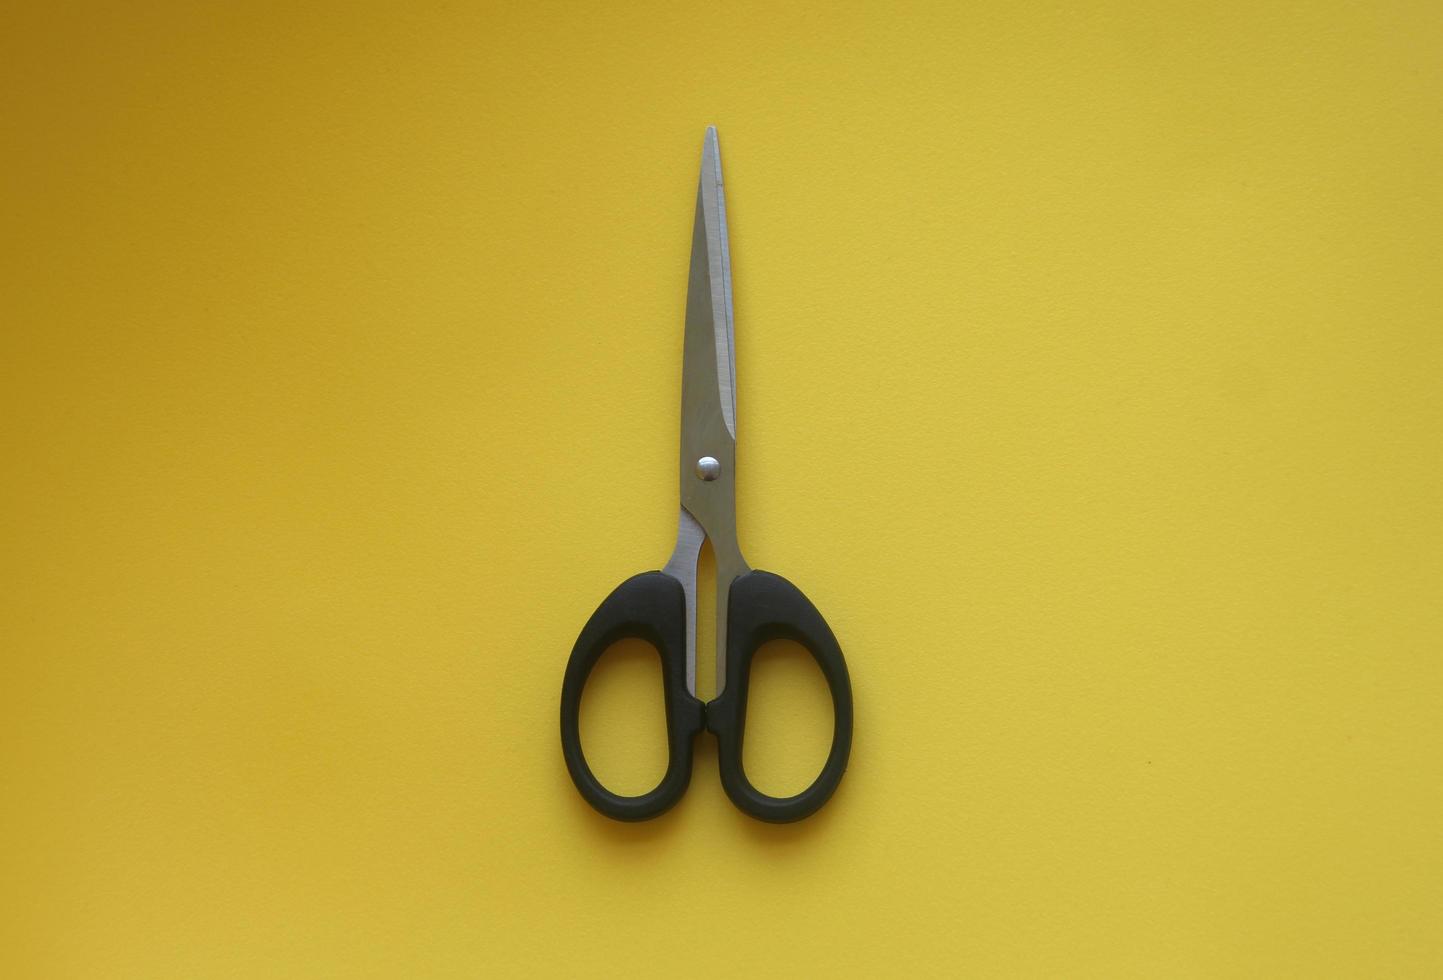 nero inossidabile acciaio forbici isolato foto su giallo sfondo. scuola o ufficio utensili attrezzatura oggetto.